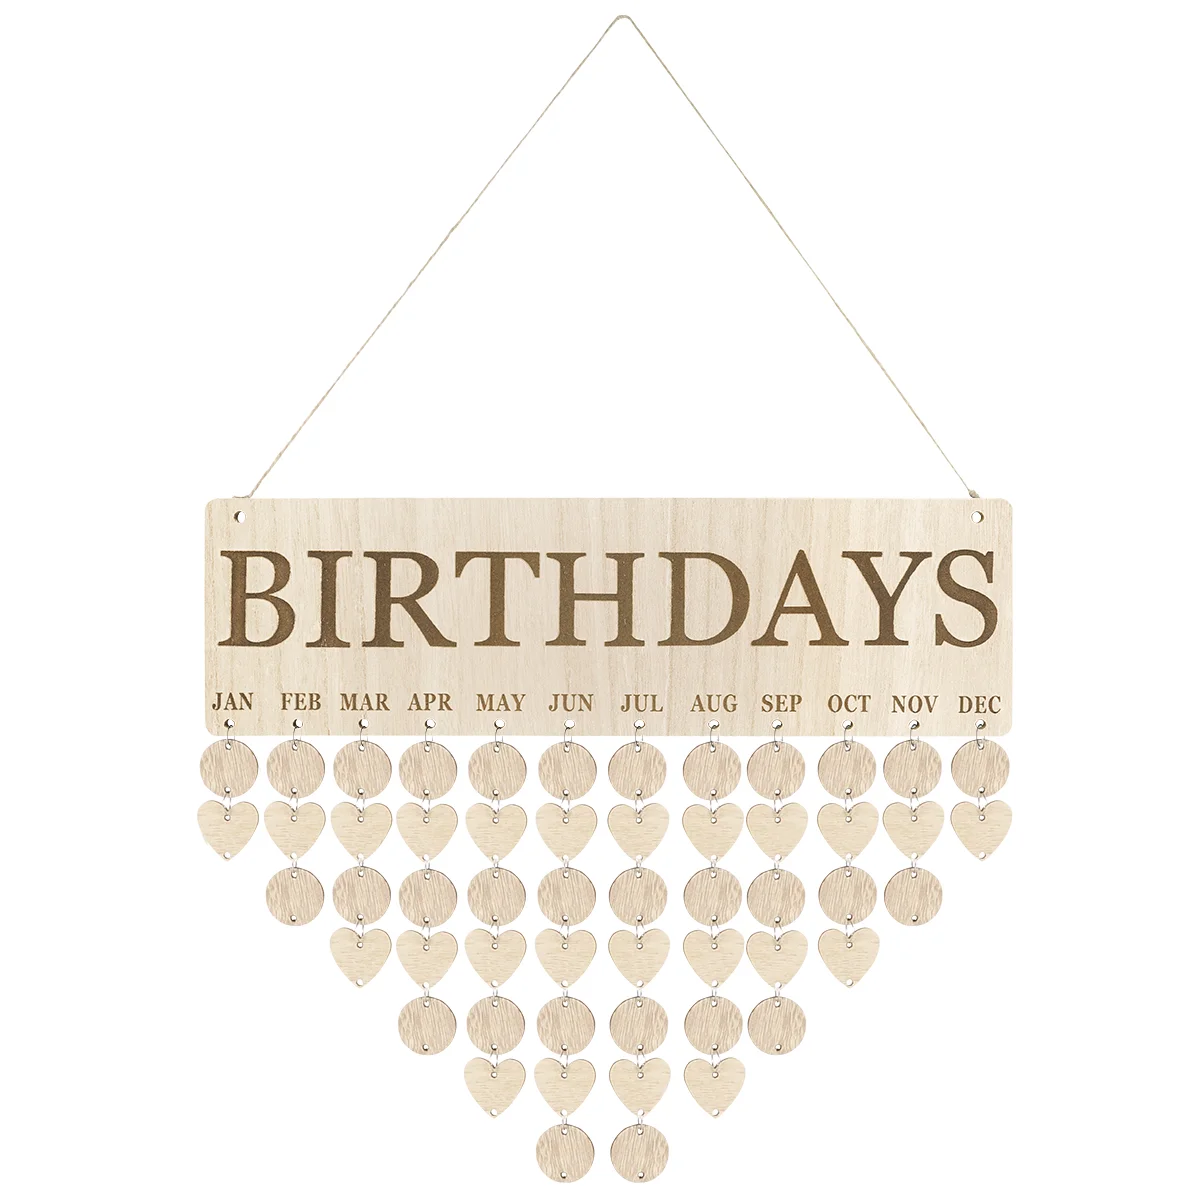 

Напоминание о днях рождения для друзей, доска с календарем, деревянная самодельная настенная подвесная табличка на день рождения с 50 деревянными бирками для мам